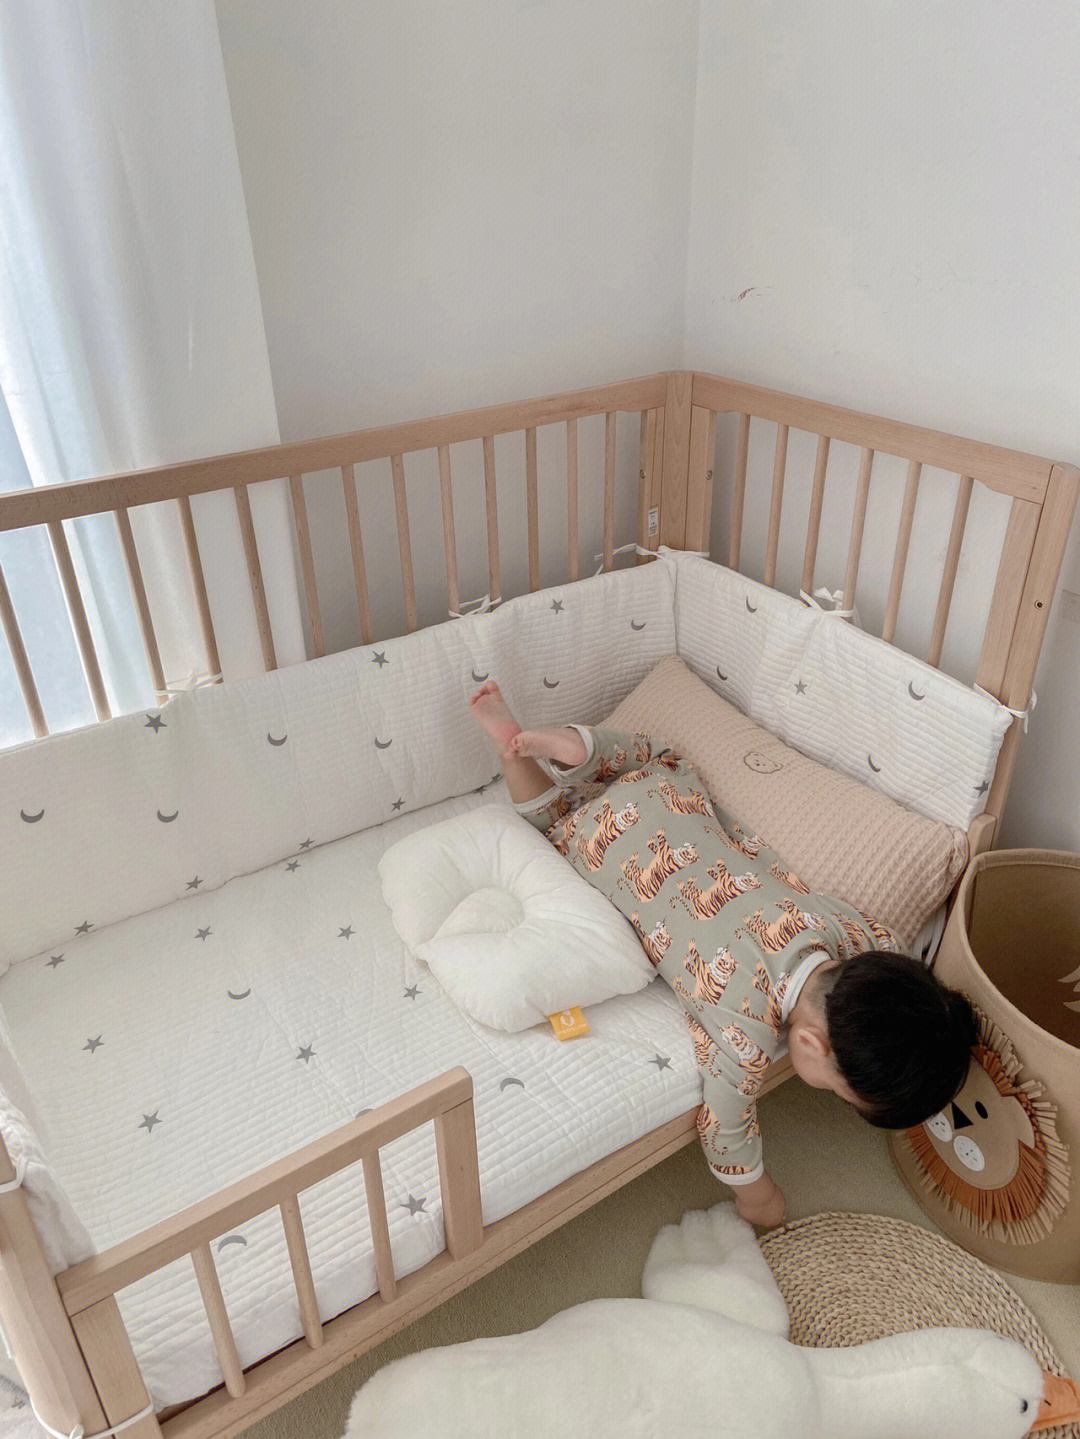 婴儿床改造成沙发图片